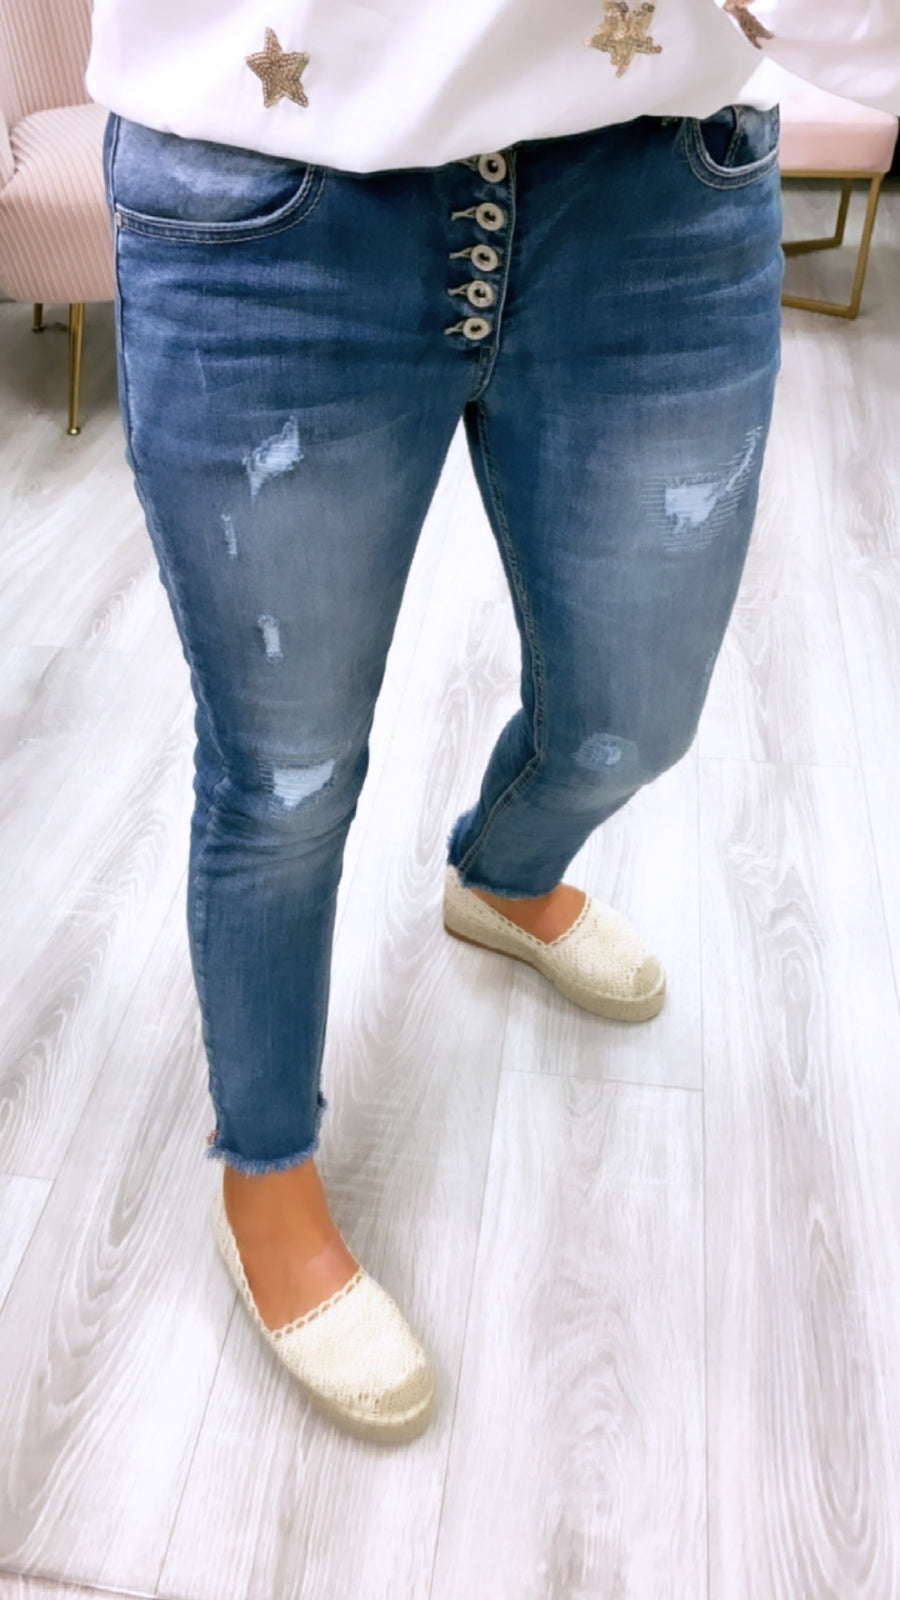 Katie Crop Jeans